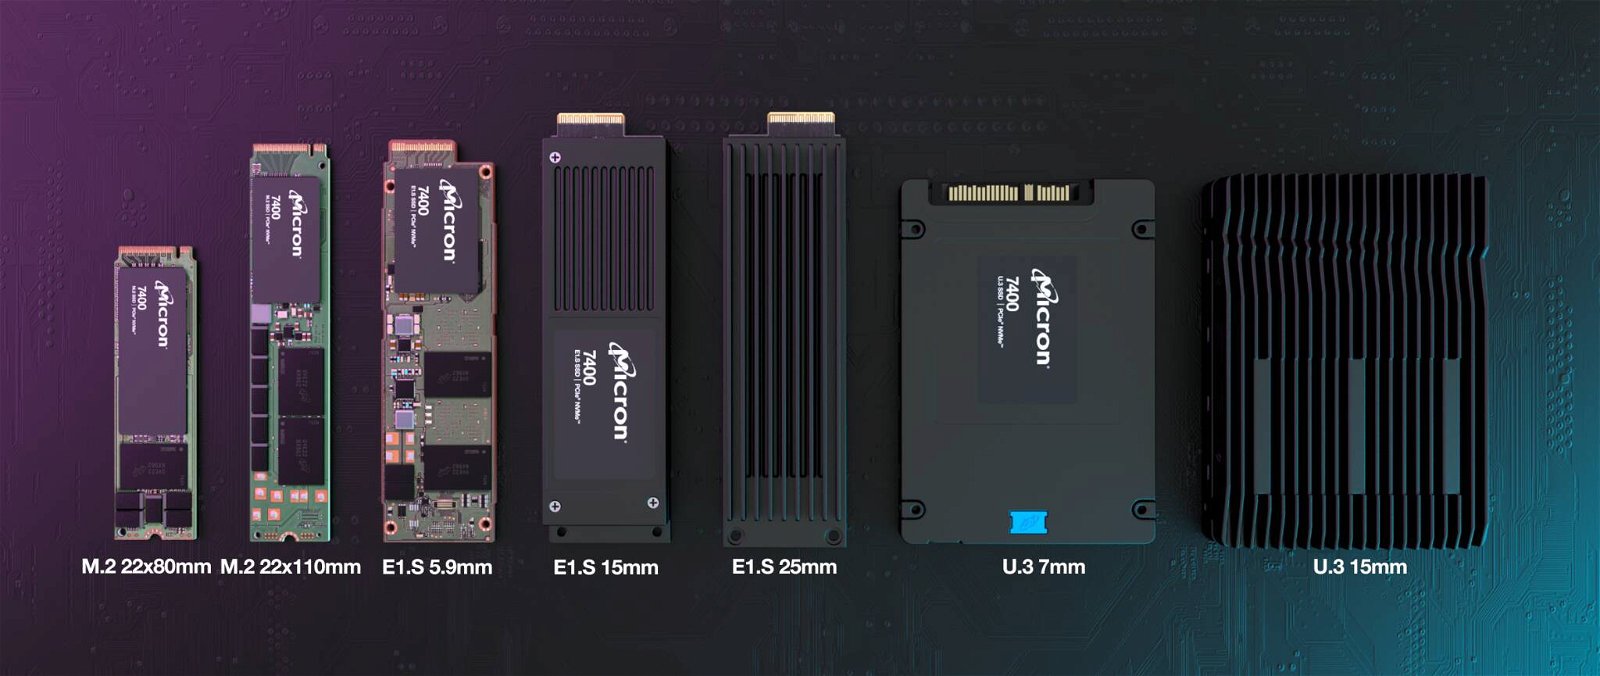 Immagine di Micron 7400, l'SSD che offre prestazioni PCIe 4.0 ai data center